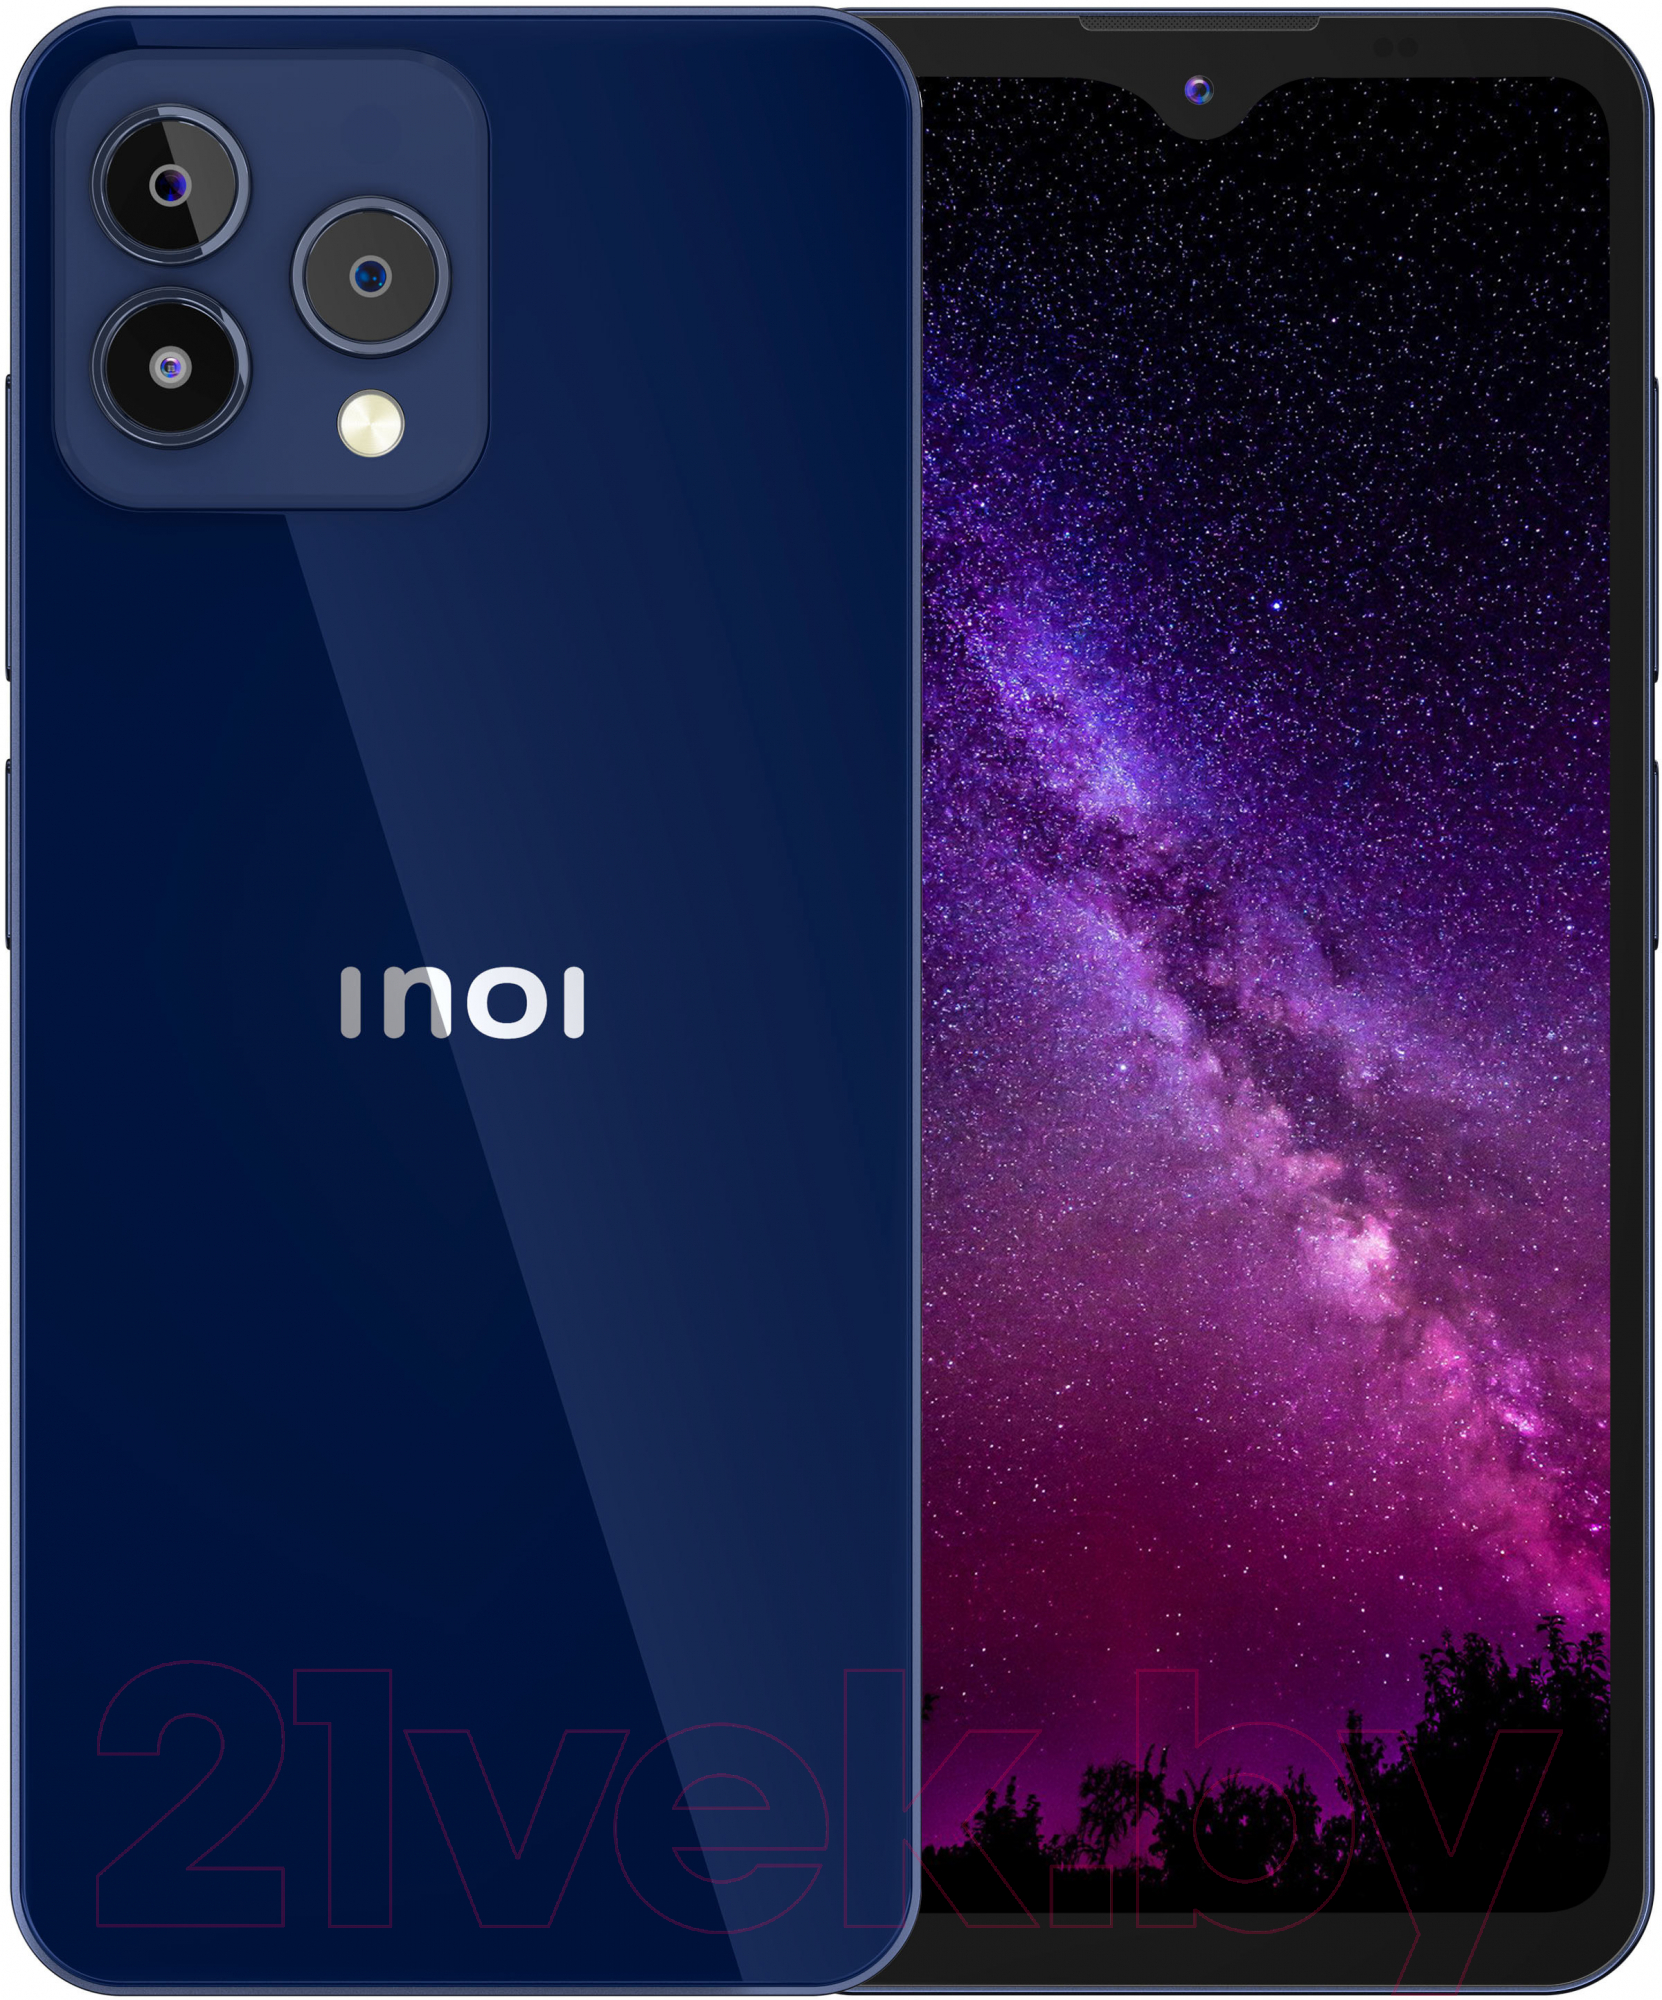 Смартфон Inoi A72 4GB/64GB NFC (синий)